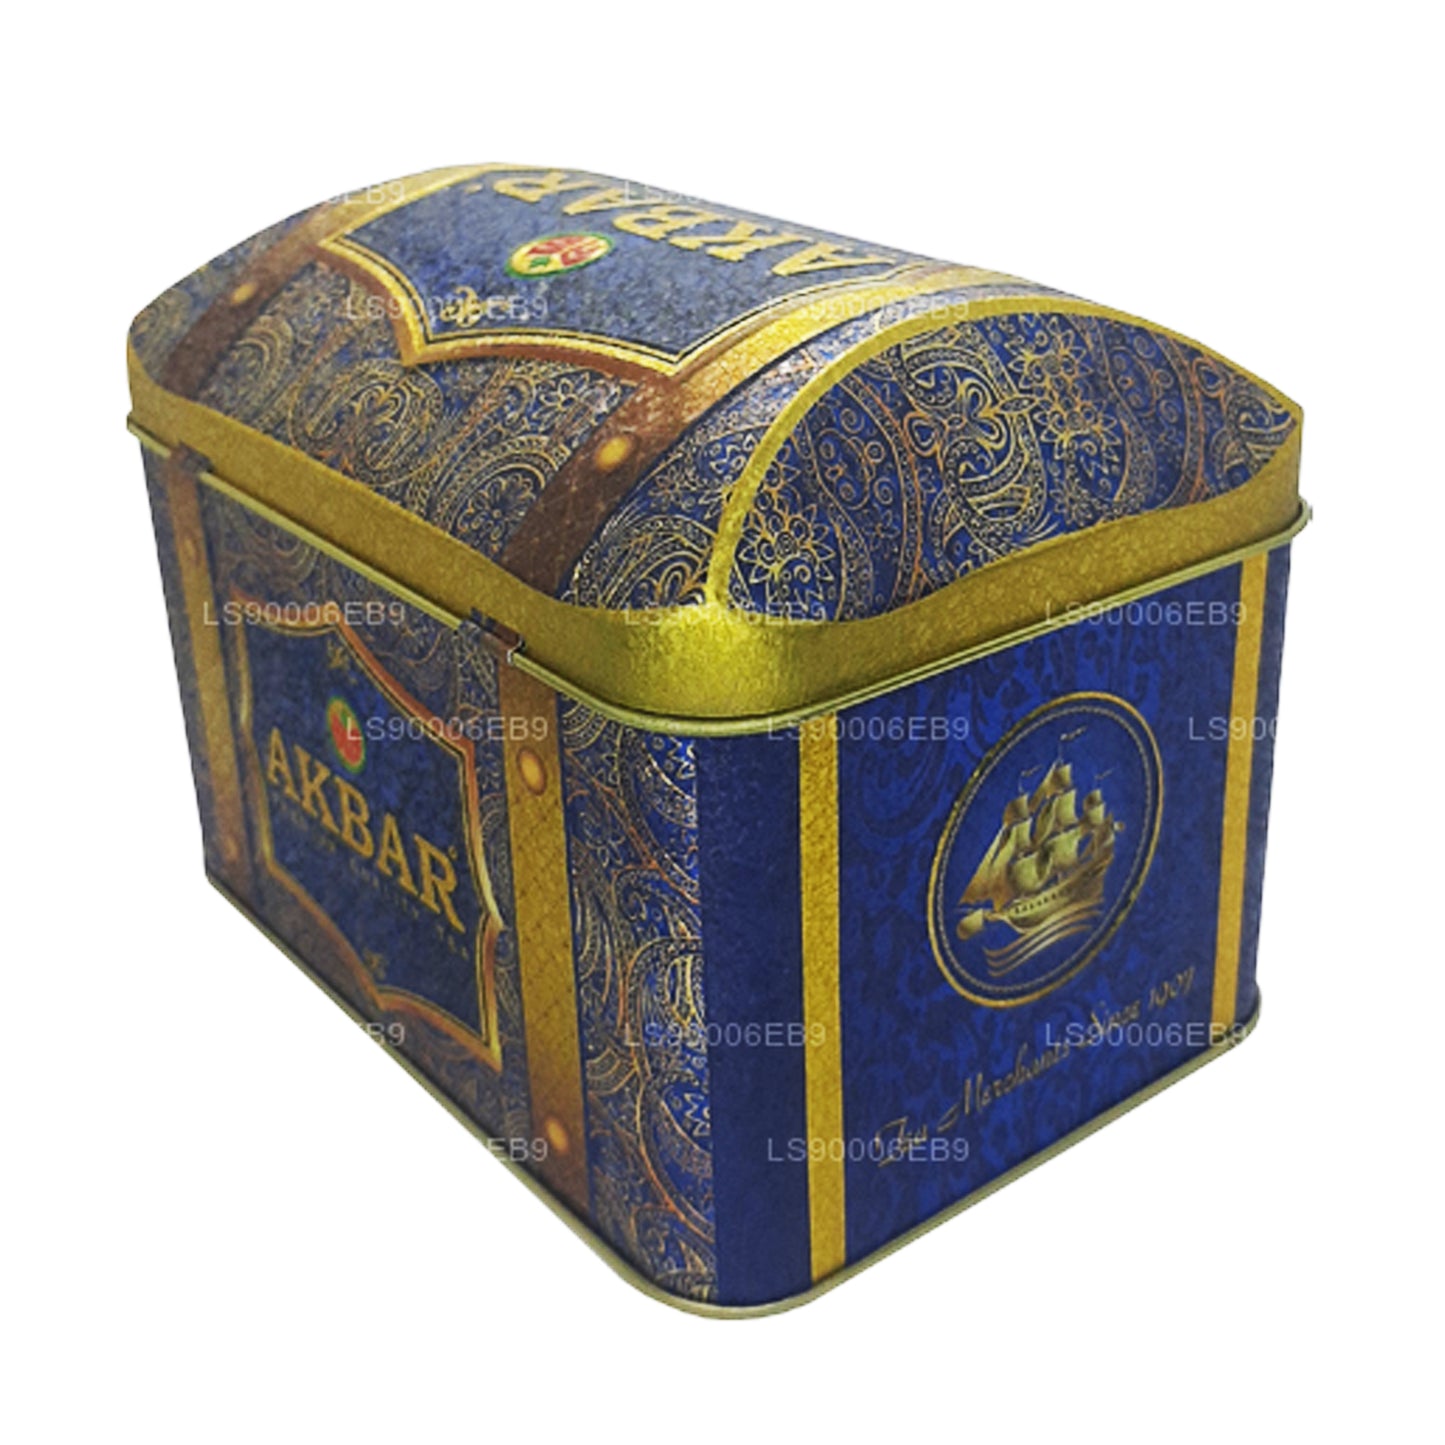 Caja de tesoros misteriosos orientales de la colección exclusiva de Akbar (250 g)